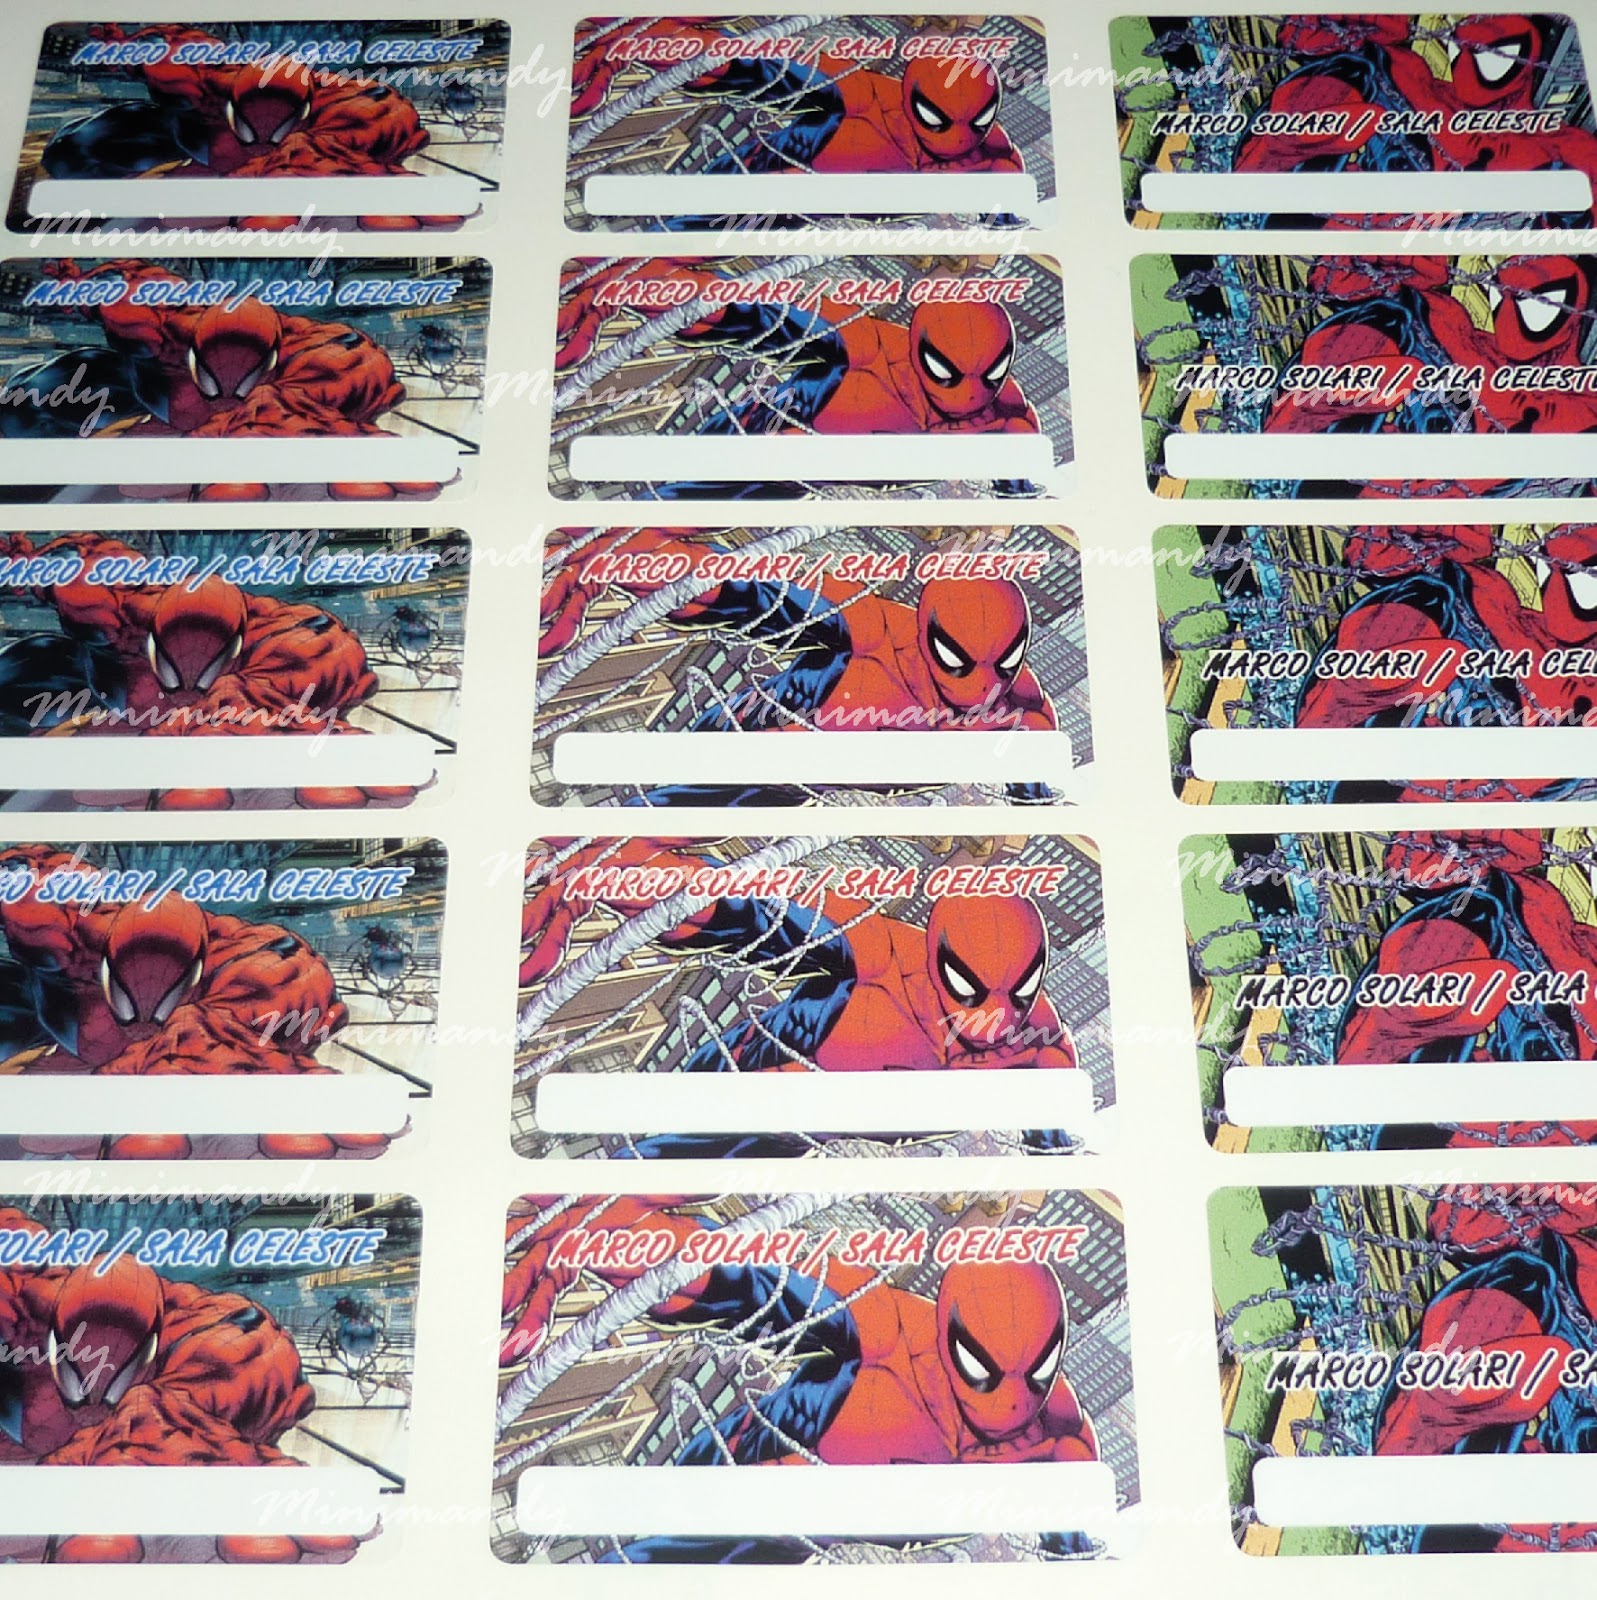 MinimandySign: Etiquetas escolares - Spiderman